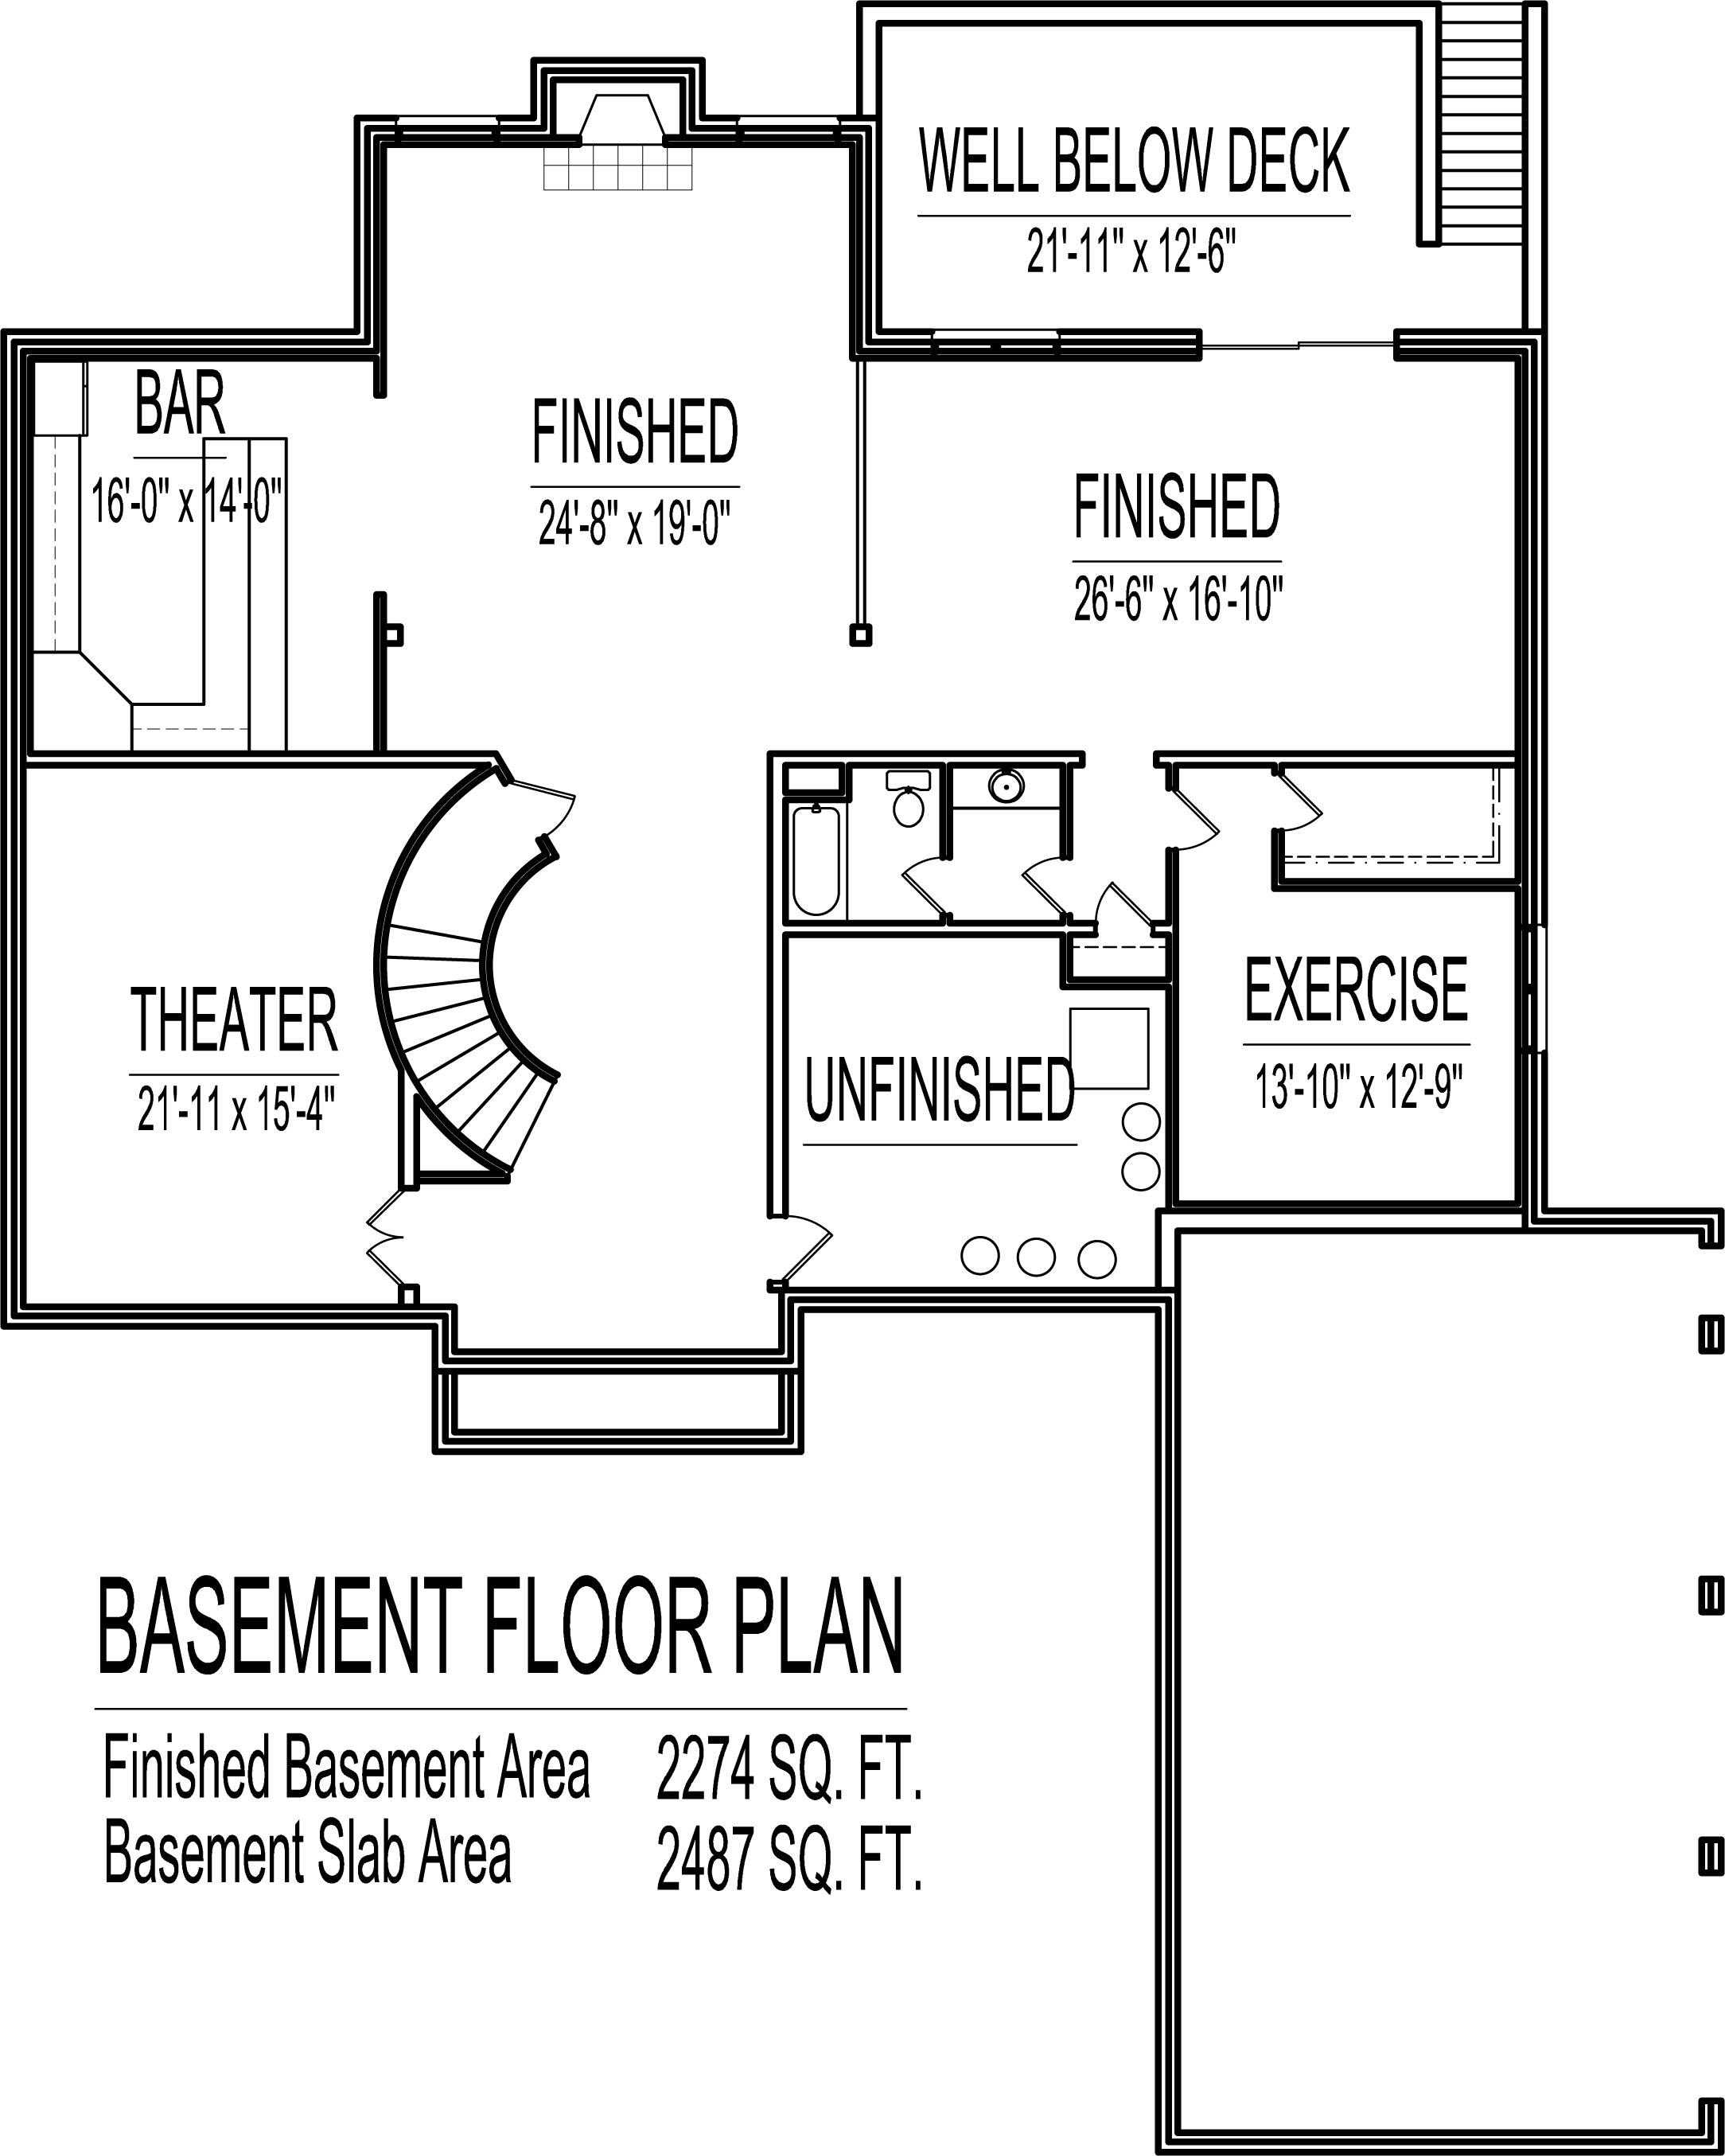 4500 Square Foot House Floor Plans 5 Bedroom 2 Story Double Stairs,Ina Garten Beef Tenderloin Steak